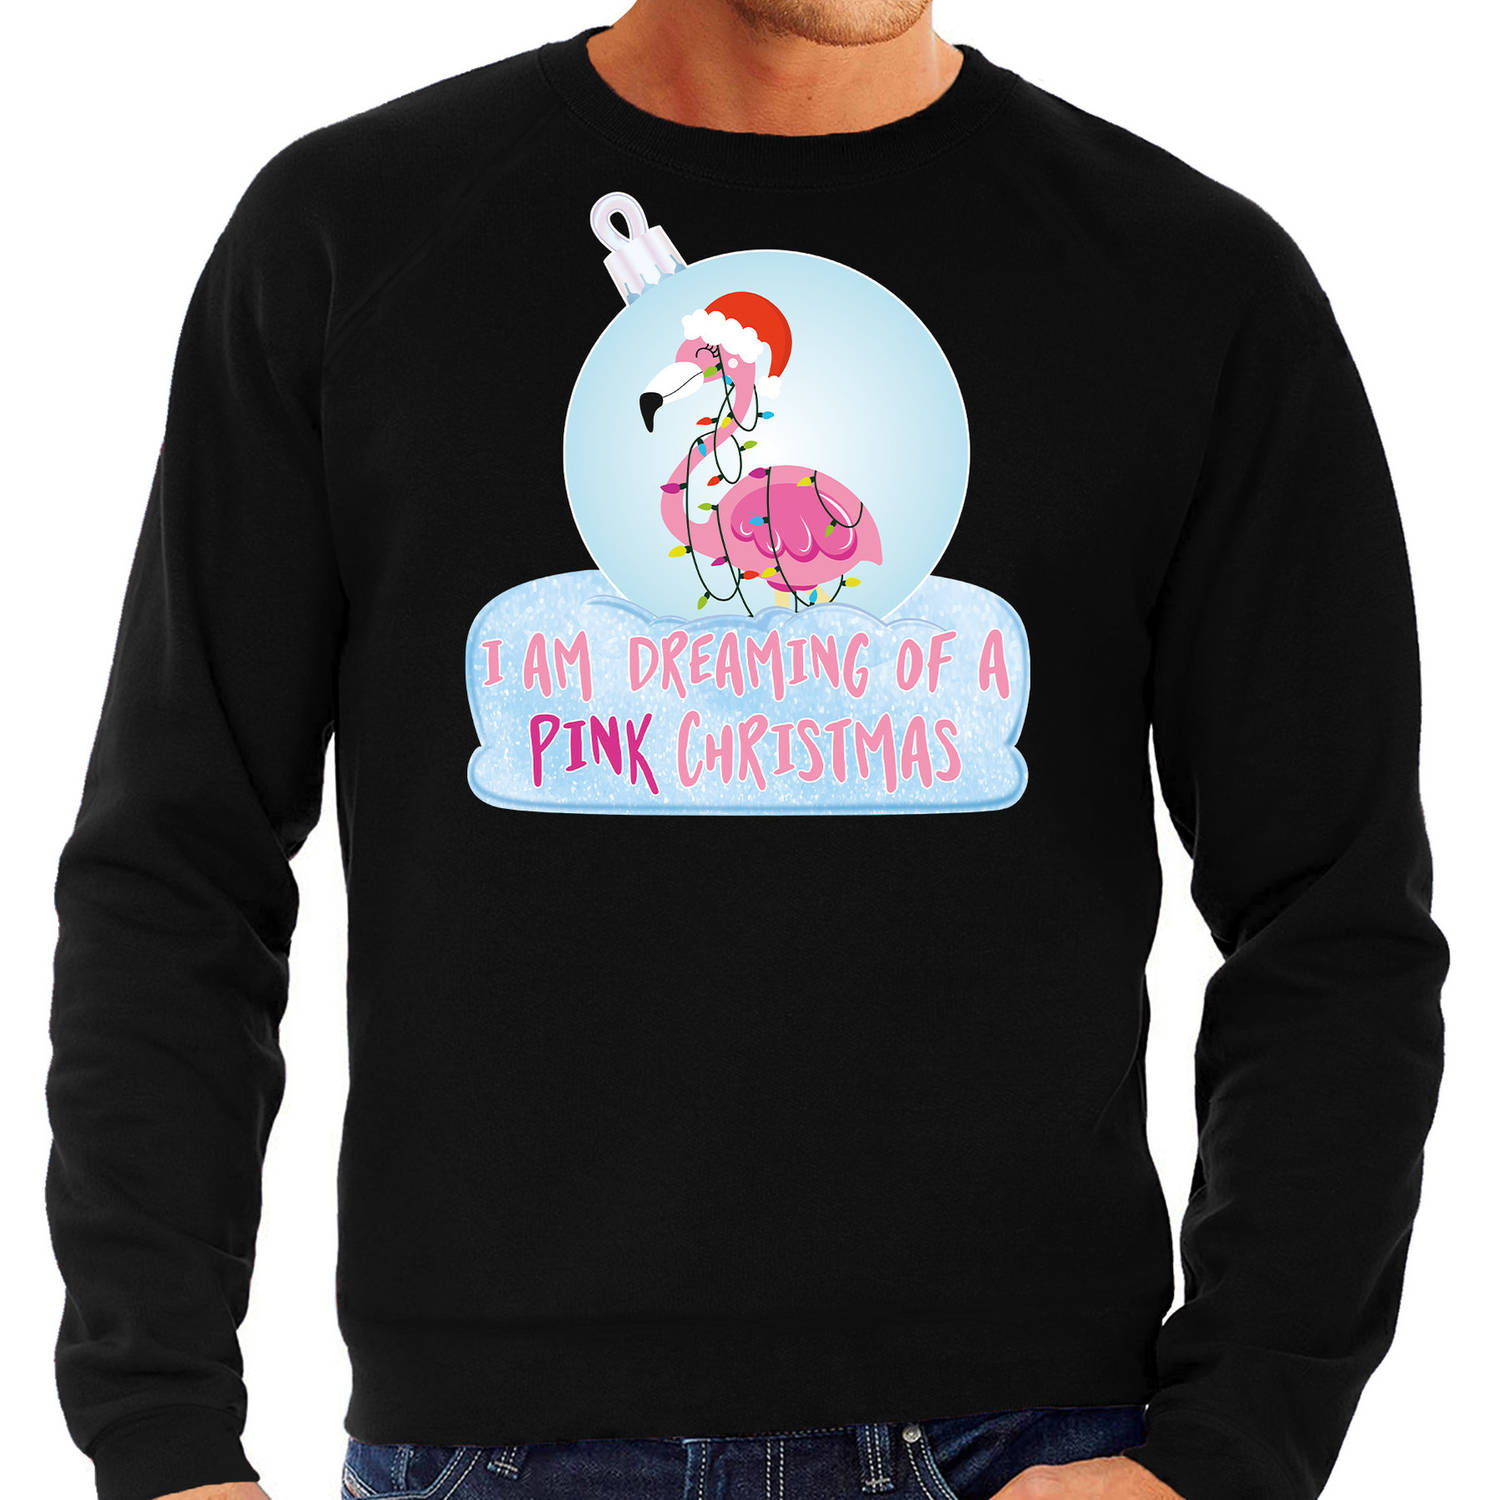 Zwarte Kersttrui / Kerstkleding I am dreaming of a pink Christmas voor heren met flamingo kerstbal M - kerst truien